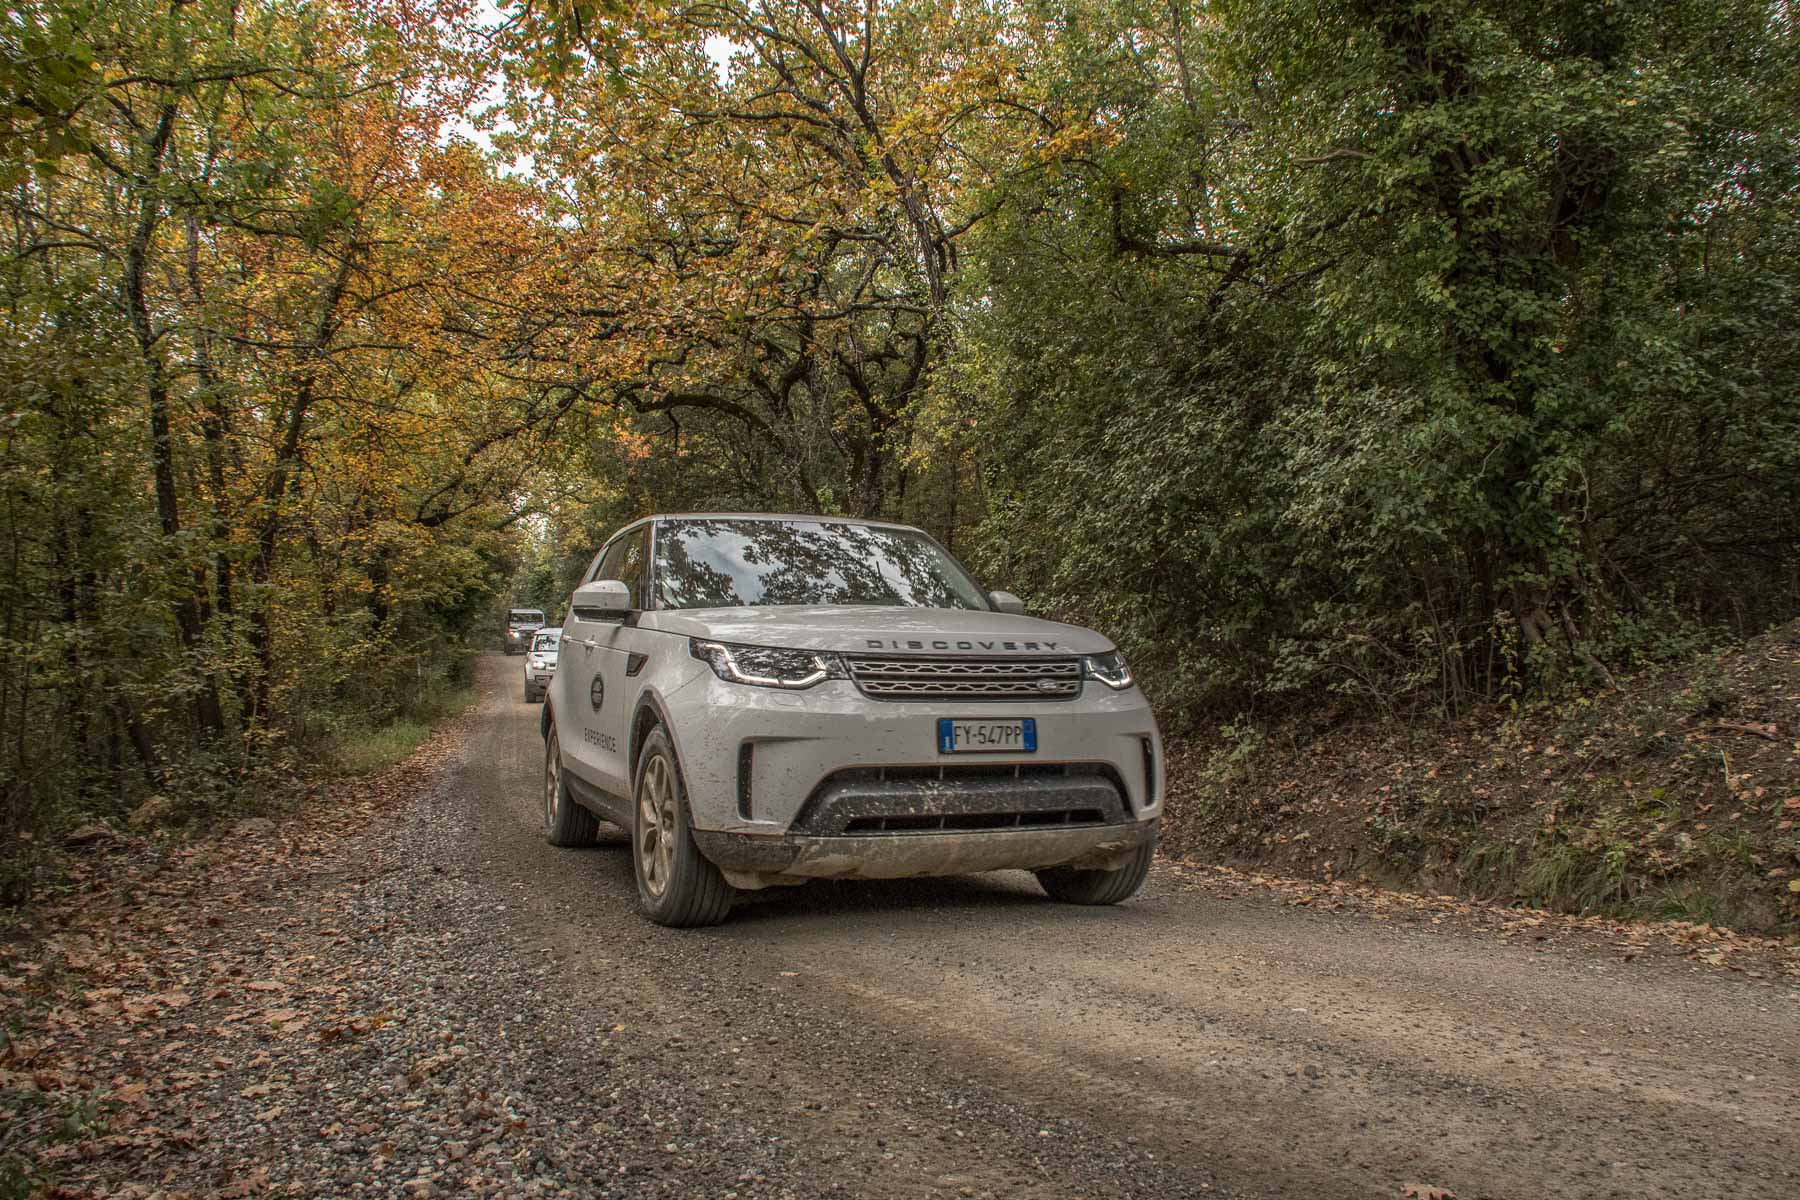 Land-Rover-Experience-Italia-Registro-Italiano-Land-Rover-Tirreno-Adriatica-2020-158